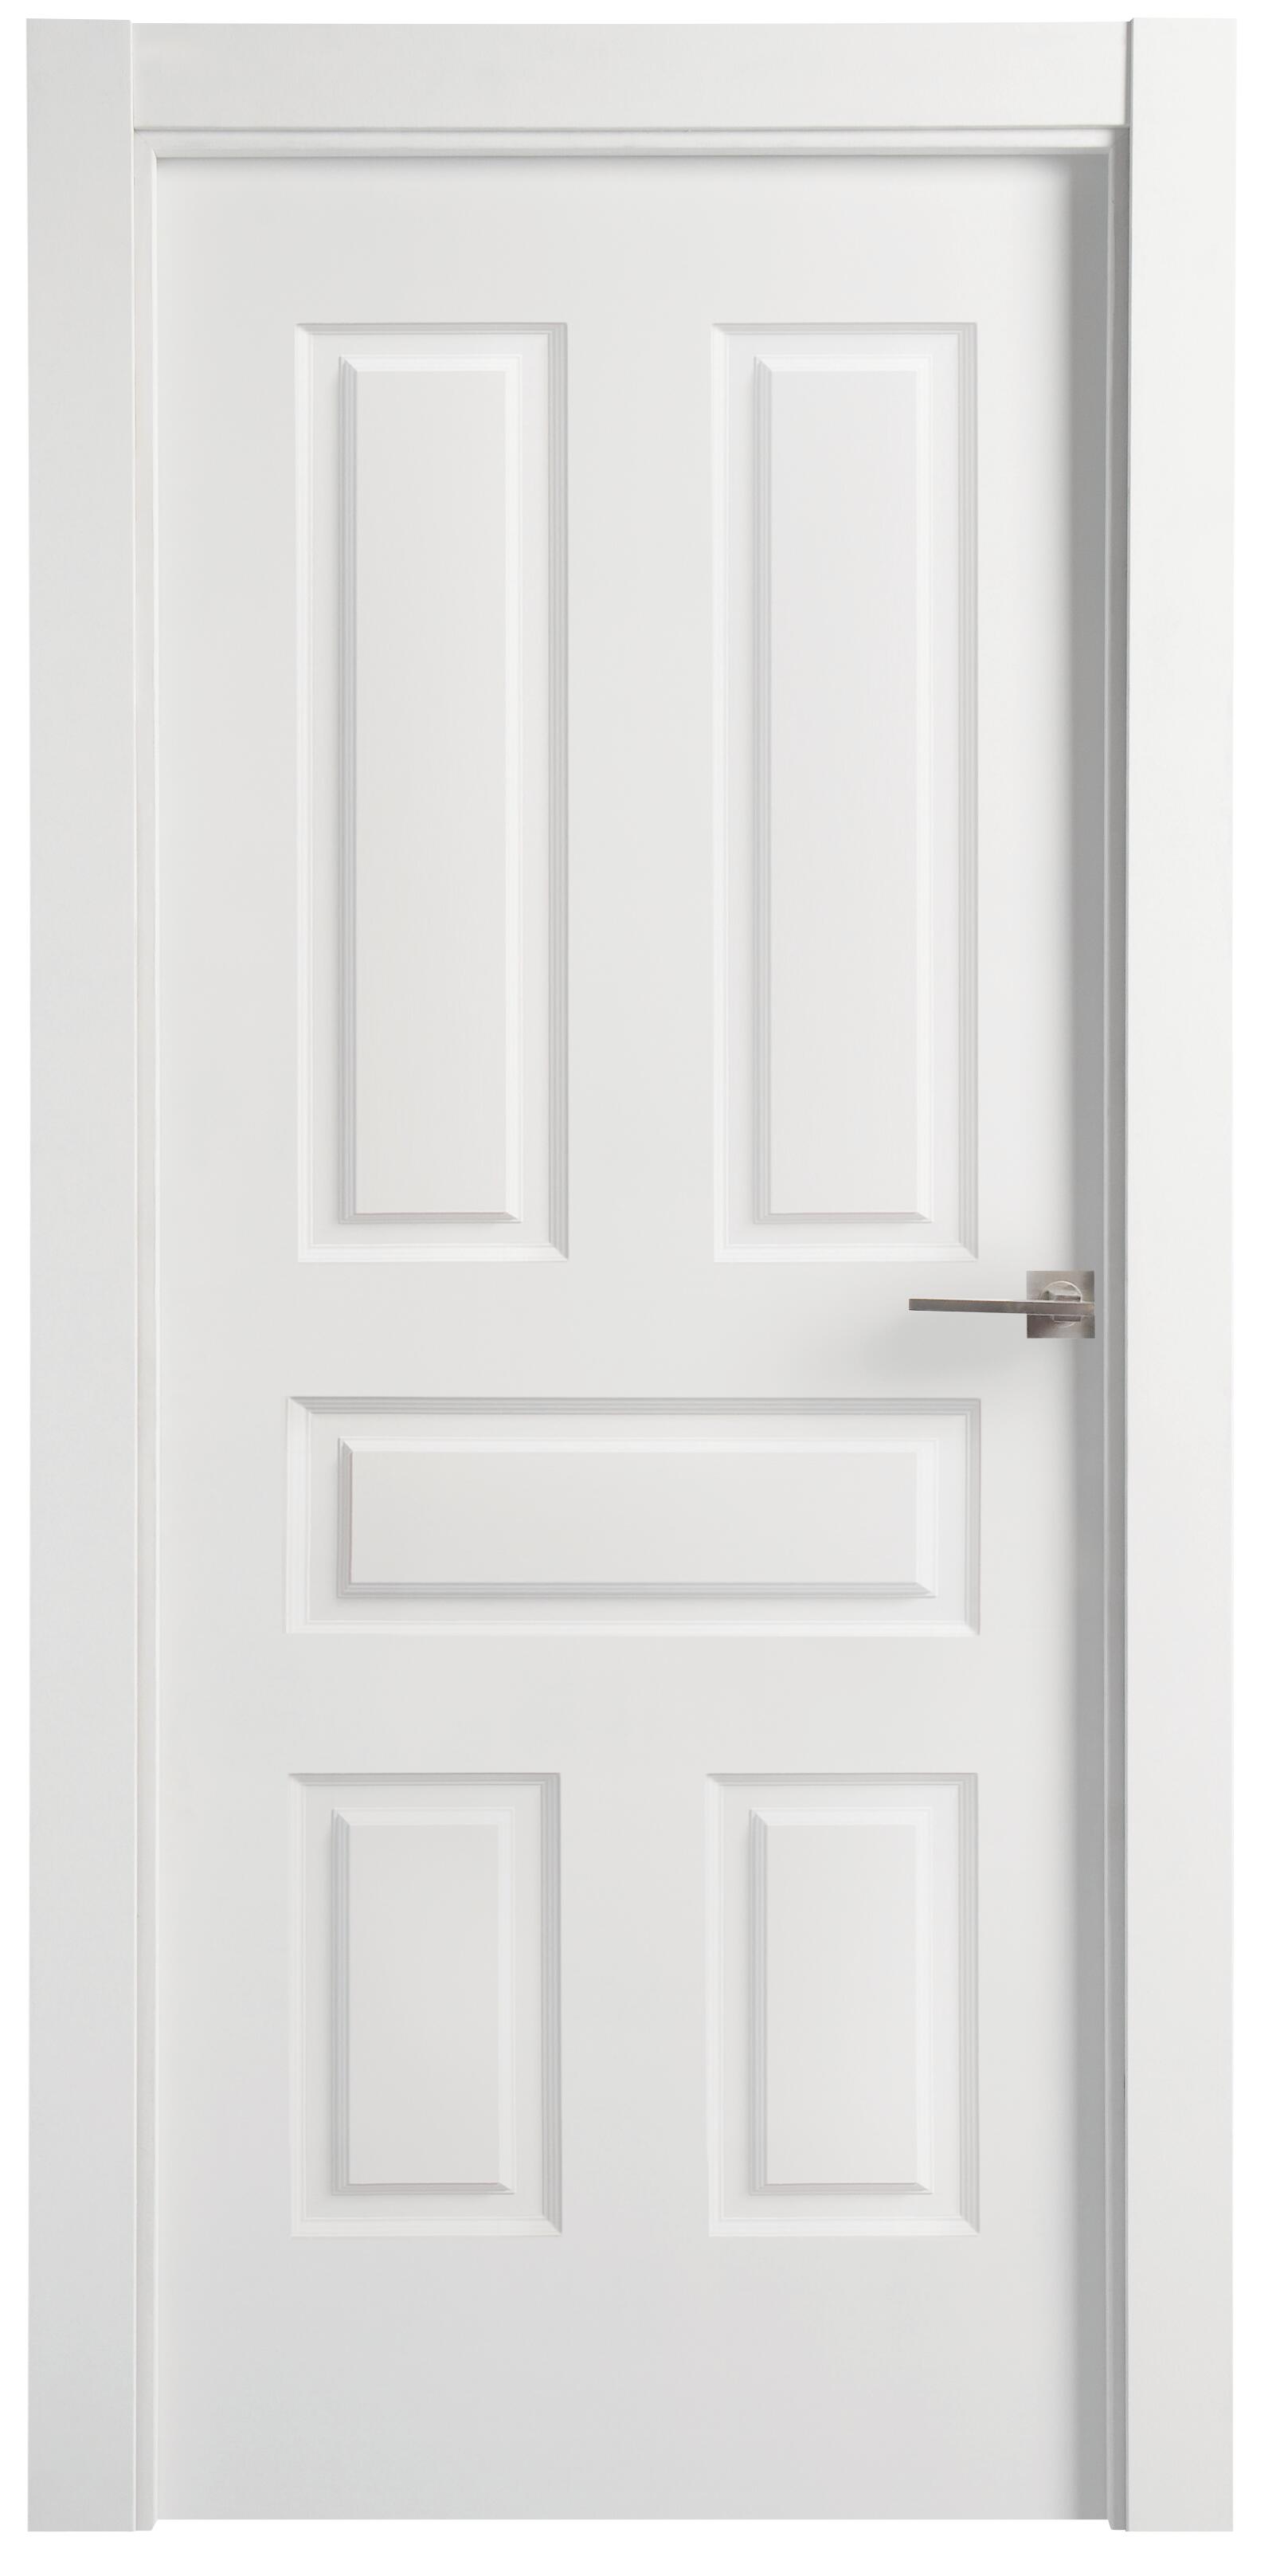 Puerta indiana plus blanco apertura izquierda de 9x72,5cm